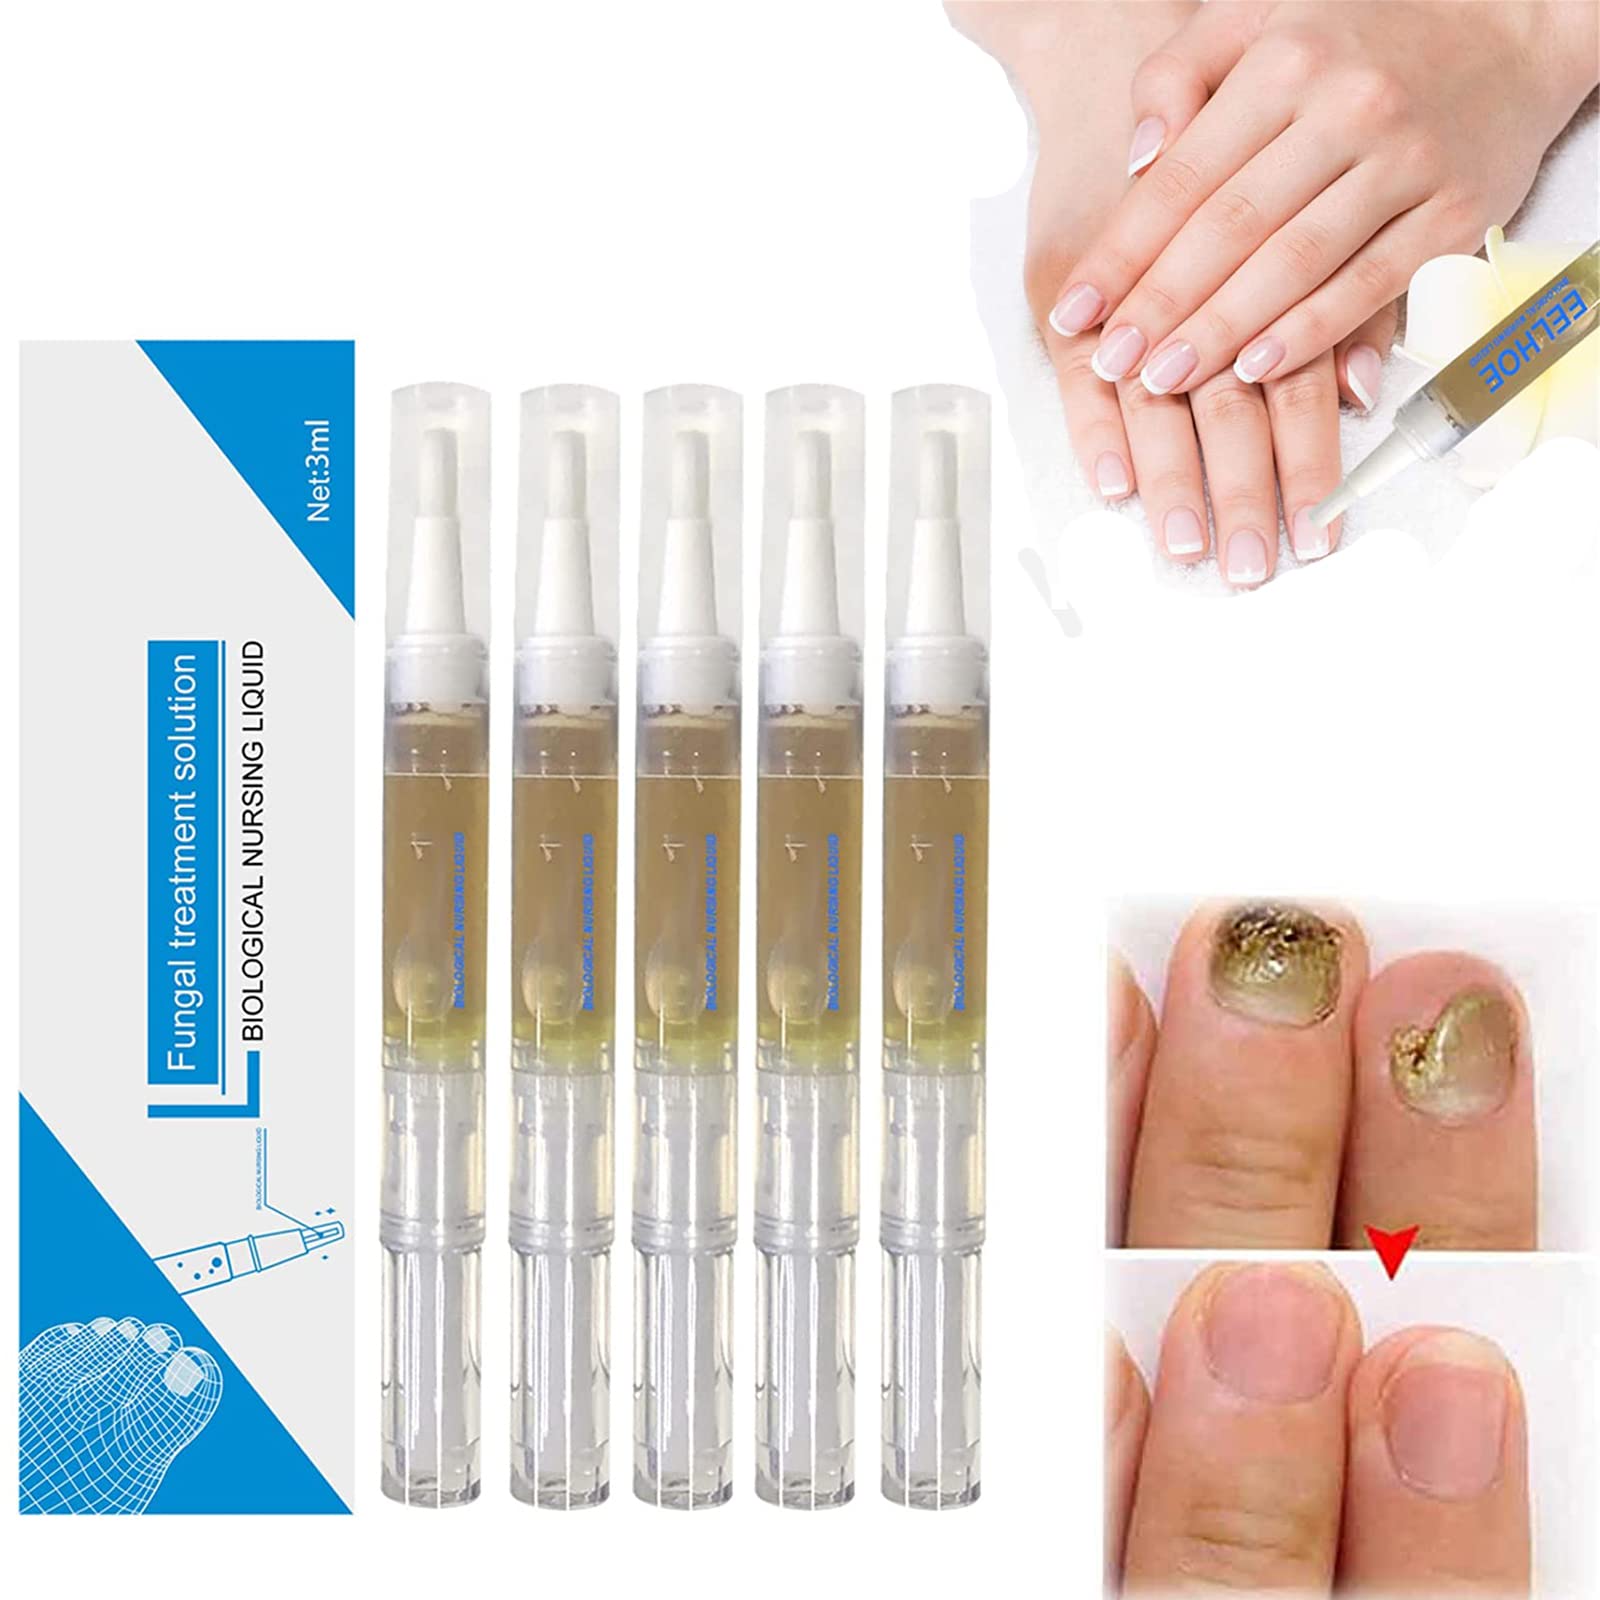 Okita Toenail Fungus Pen Nail Fungus Treatment Pen Nail Repair Pens for